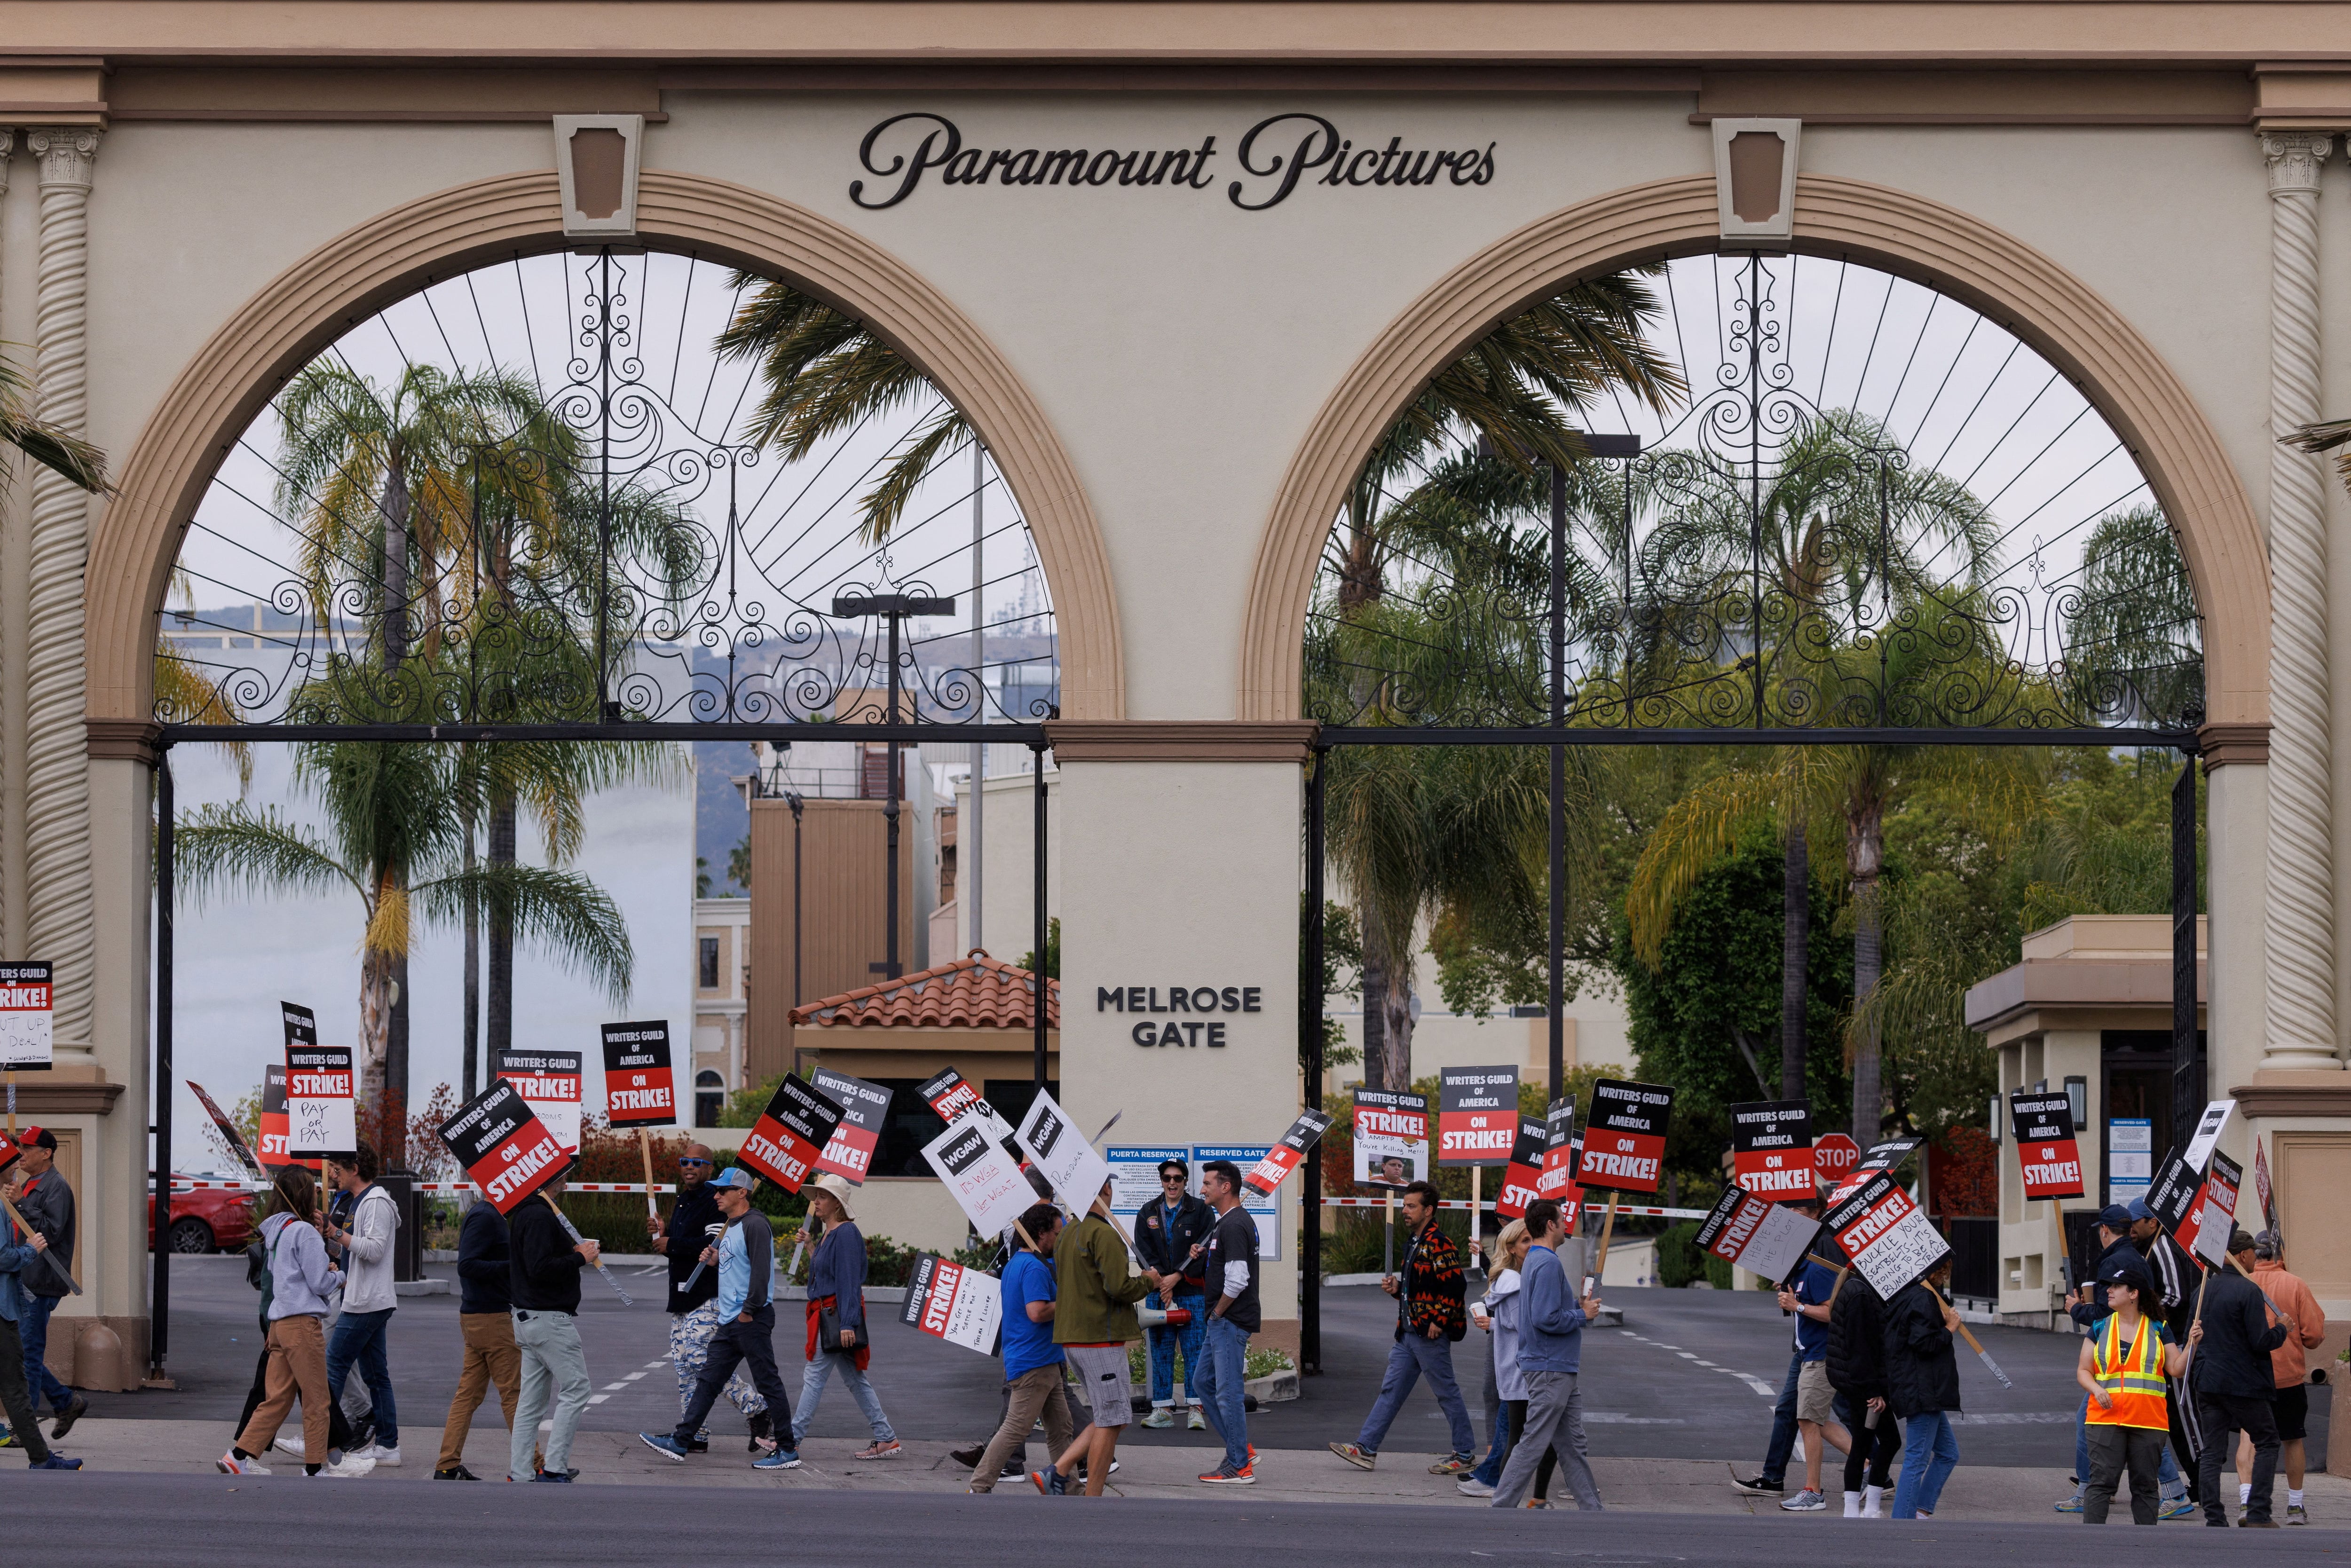 Miembros del Sindicato de Escritores de América caminan en la línea de piquete fuera de Paramount Studios en Los Ángeles, California (Foto: REUTERS/Mike Blake)
